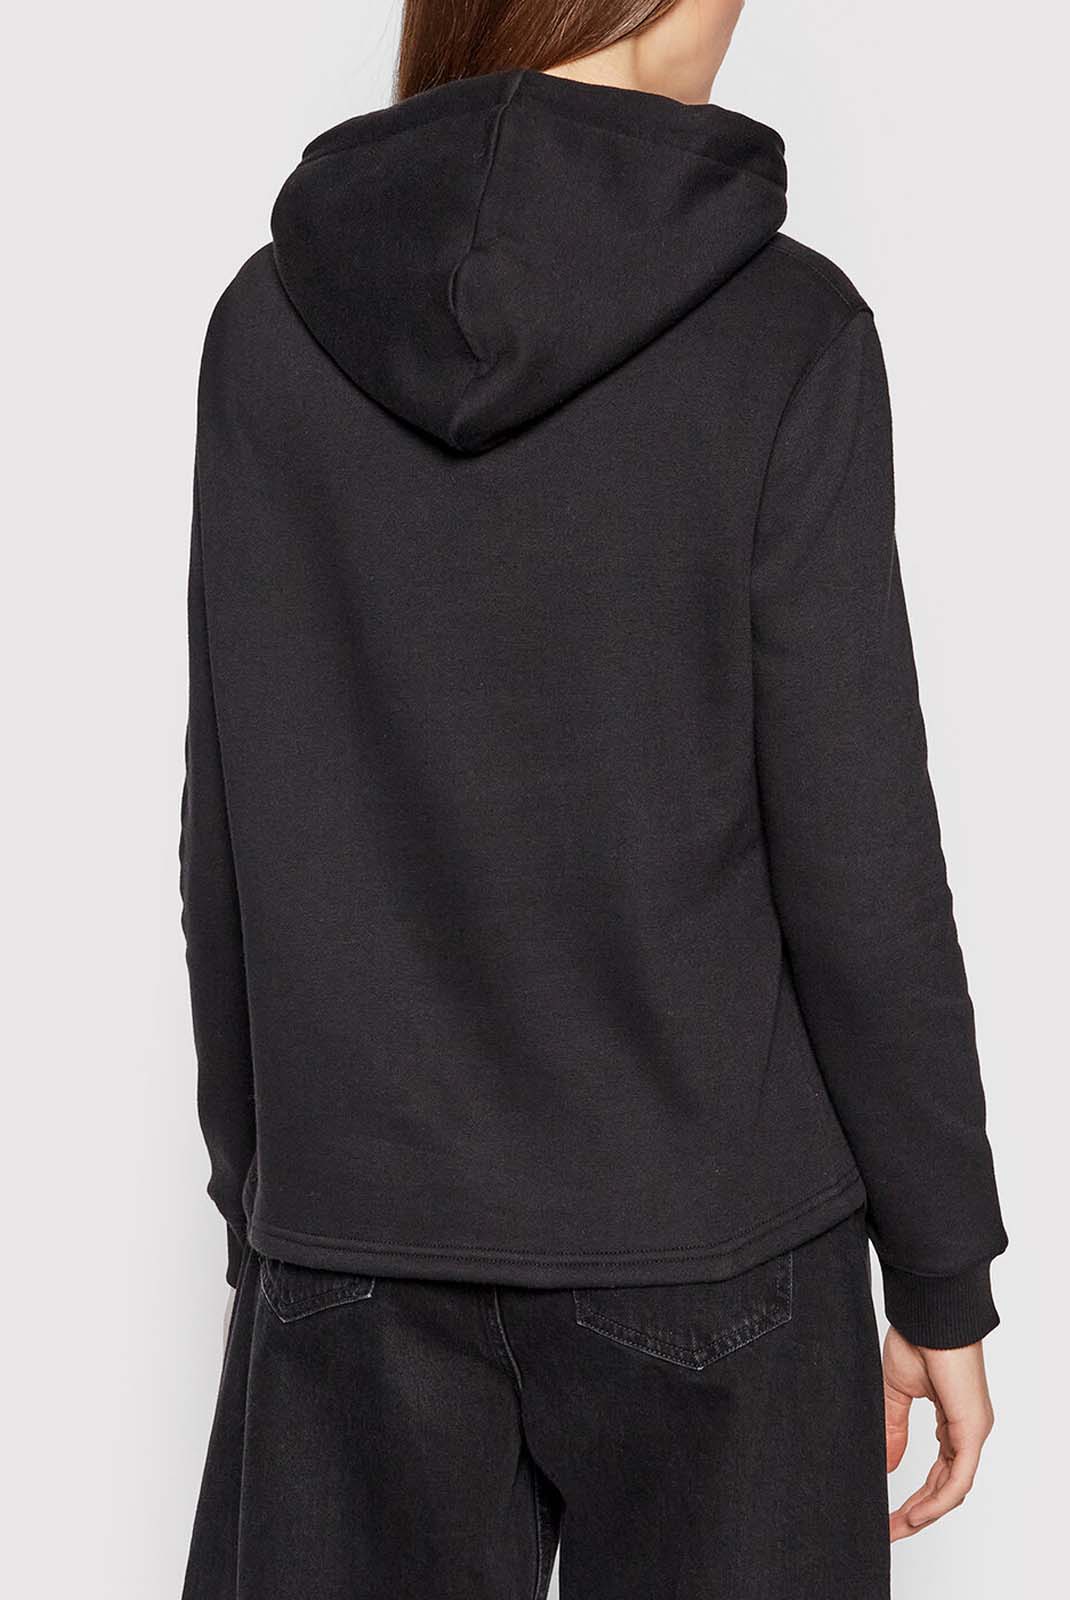 Sweat noir à capuche & coton bio Calvin Klein - J20j216951